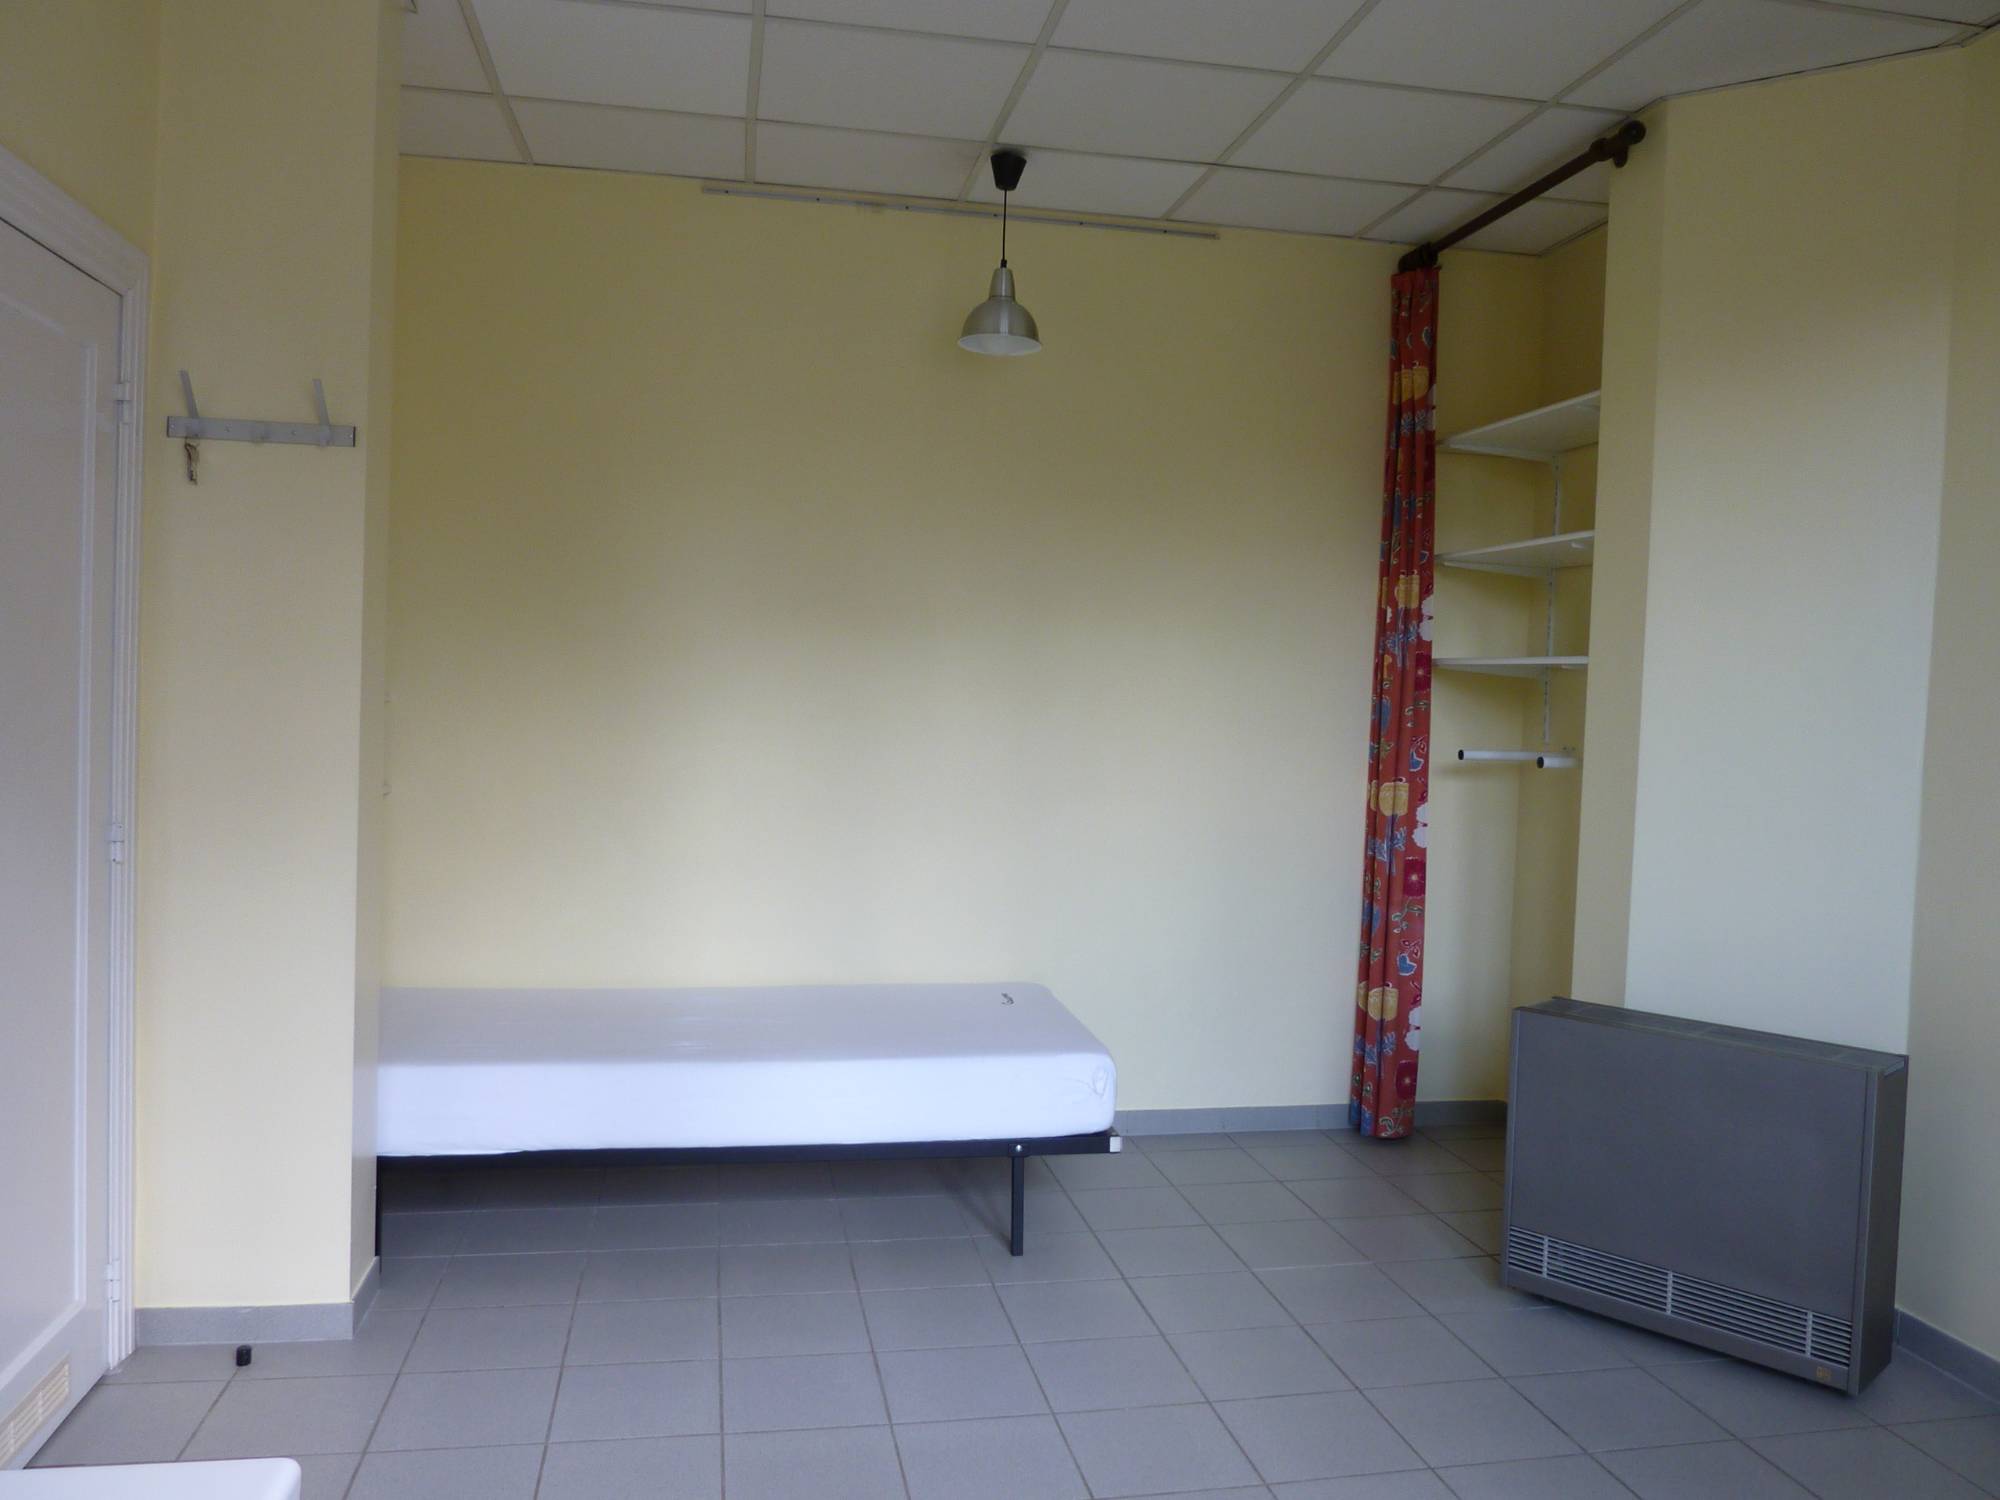 Chambres d'étudiants modernes C 319-1-C bed.1